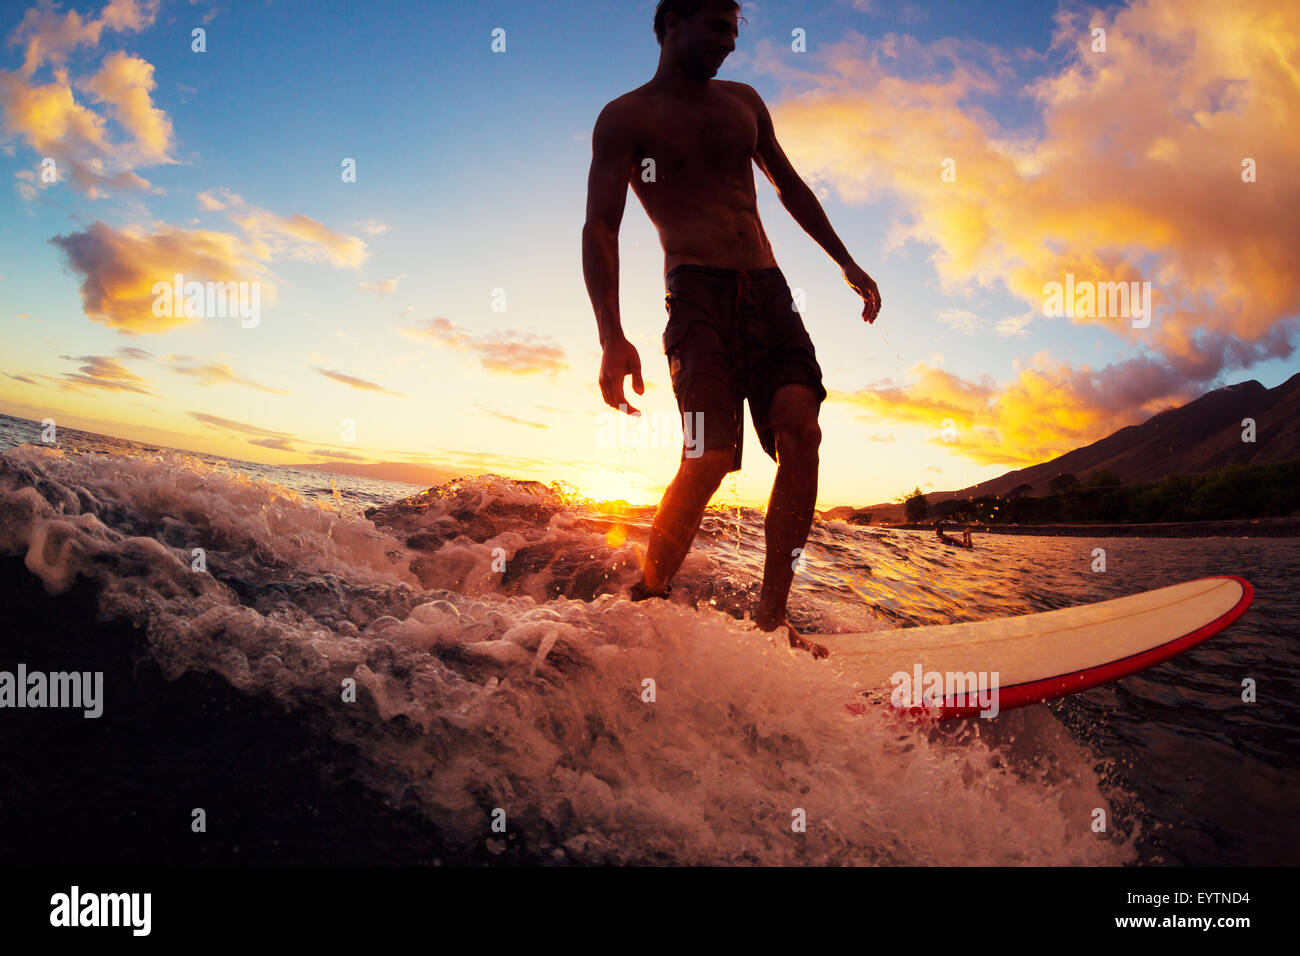 Surfen bei Sonnenuntergang. Junger Mann auf Welle bei Sonnenuntergang. Outdoor-aktiven Lebensstil. Stockfoto